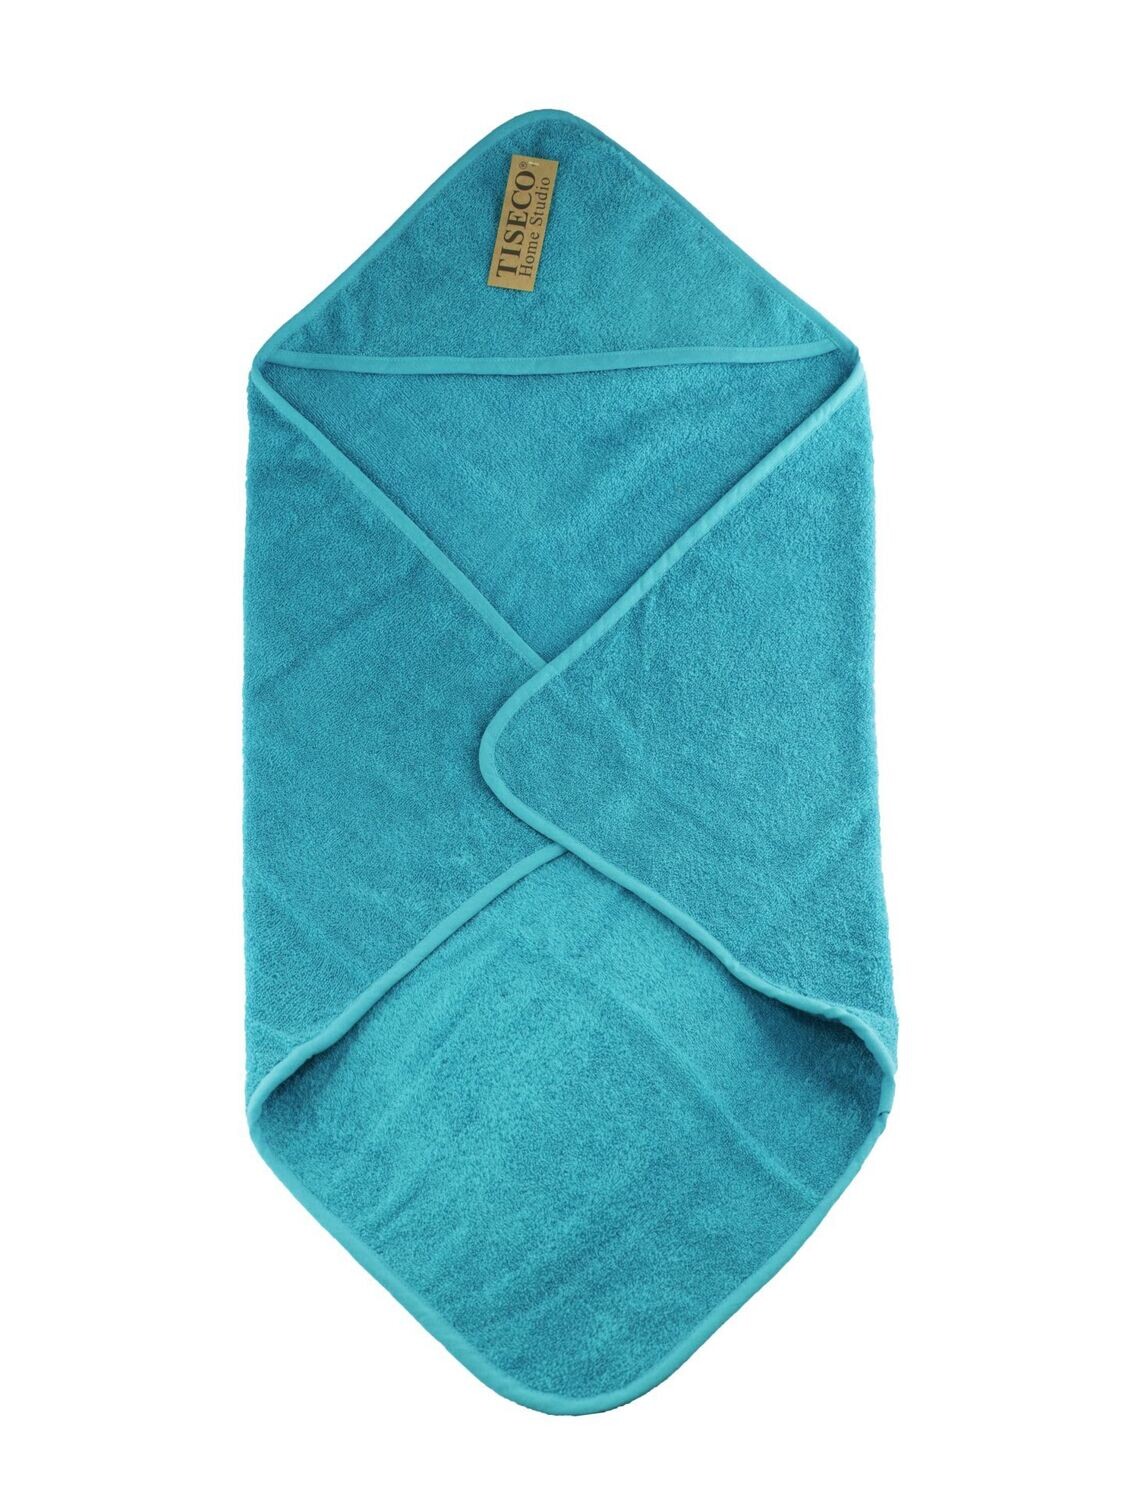 Asciugamano Bambino 75x75 cm Blu - Tirolix